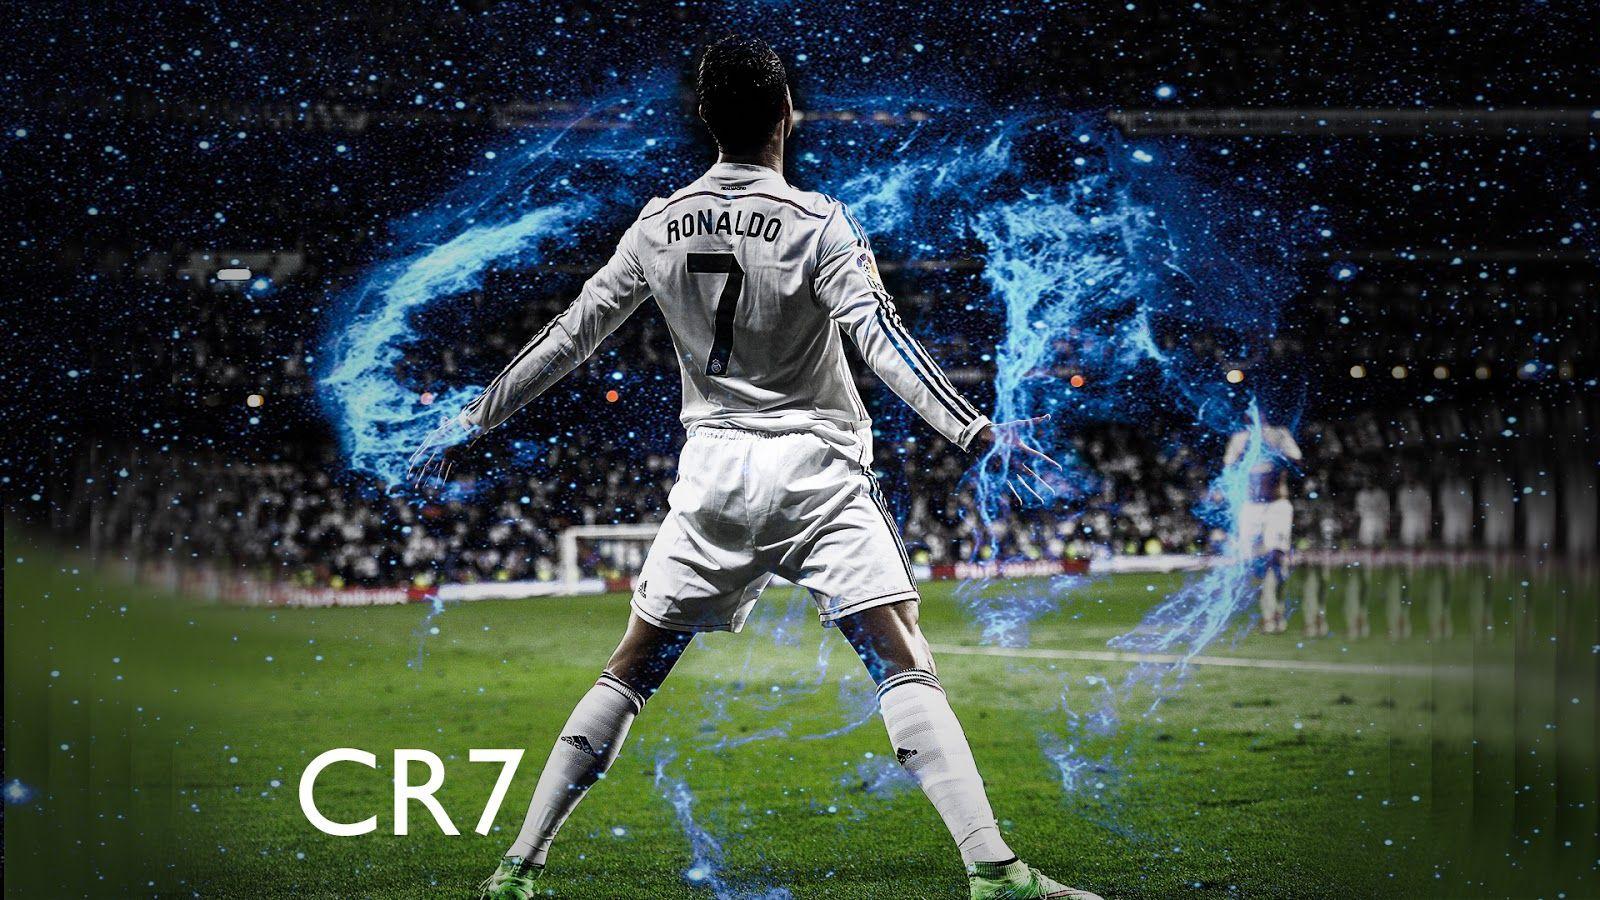 Cristiano Ronaldo 4K Wallpaper Download. CR7 Wallpaper 2017